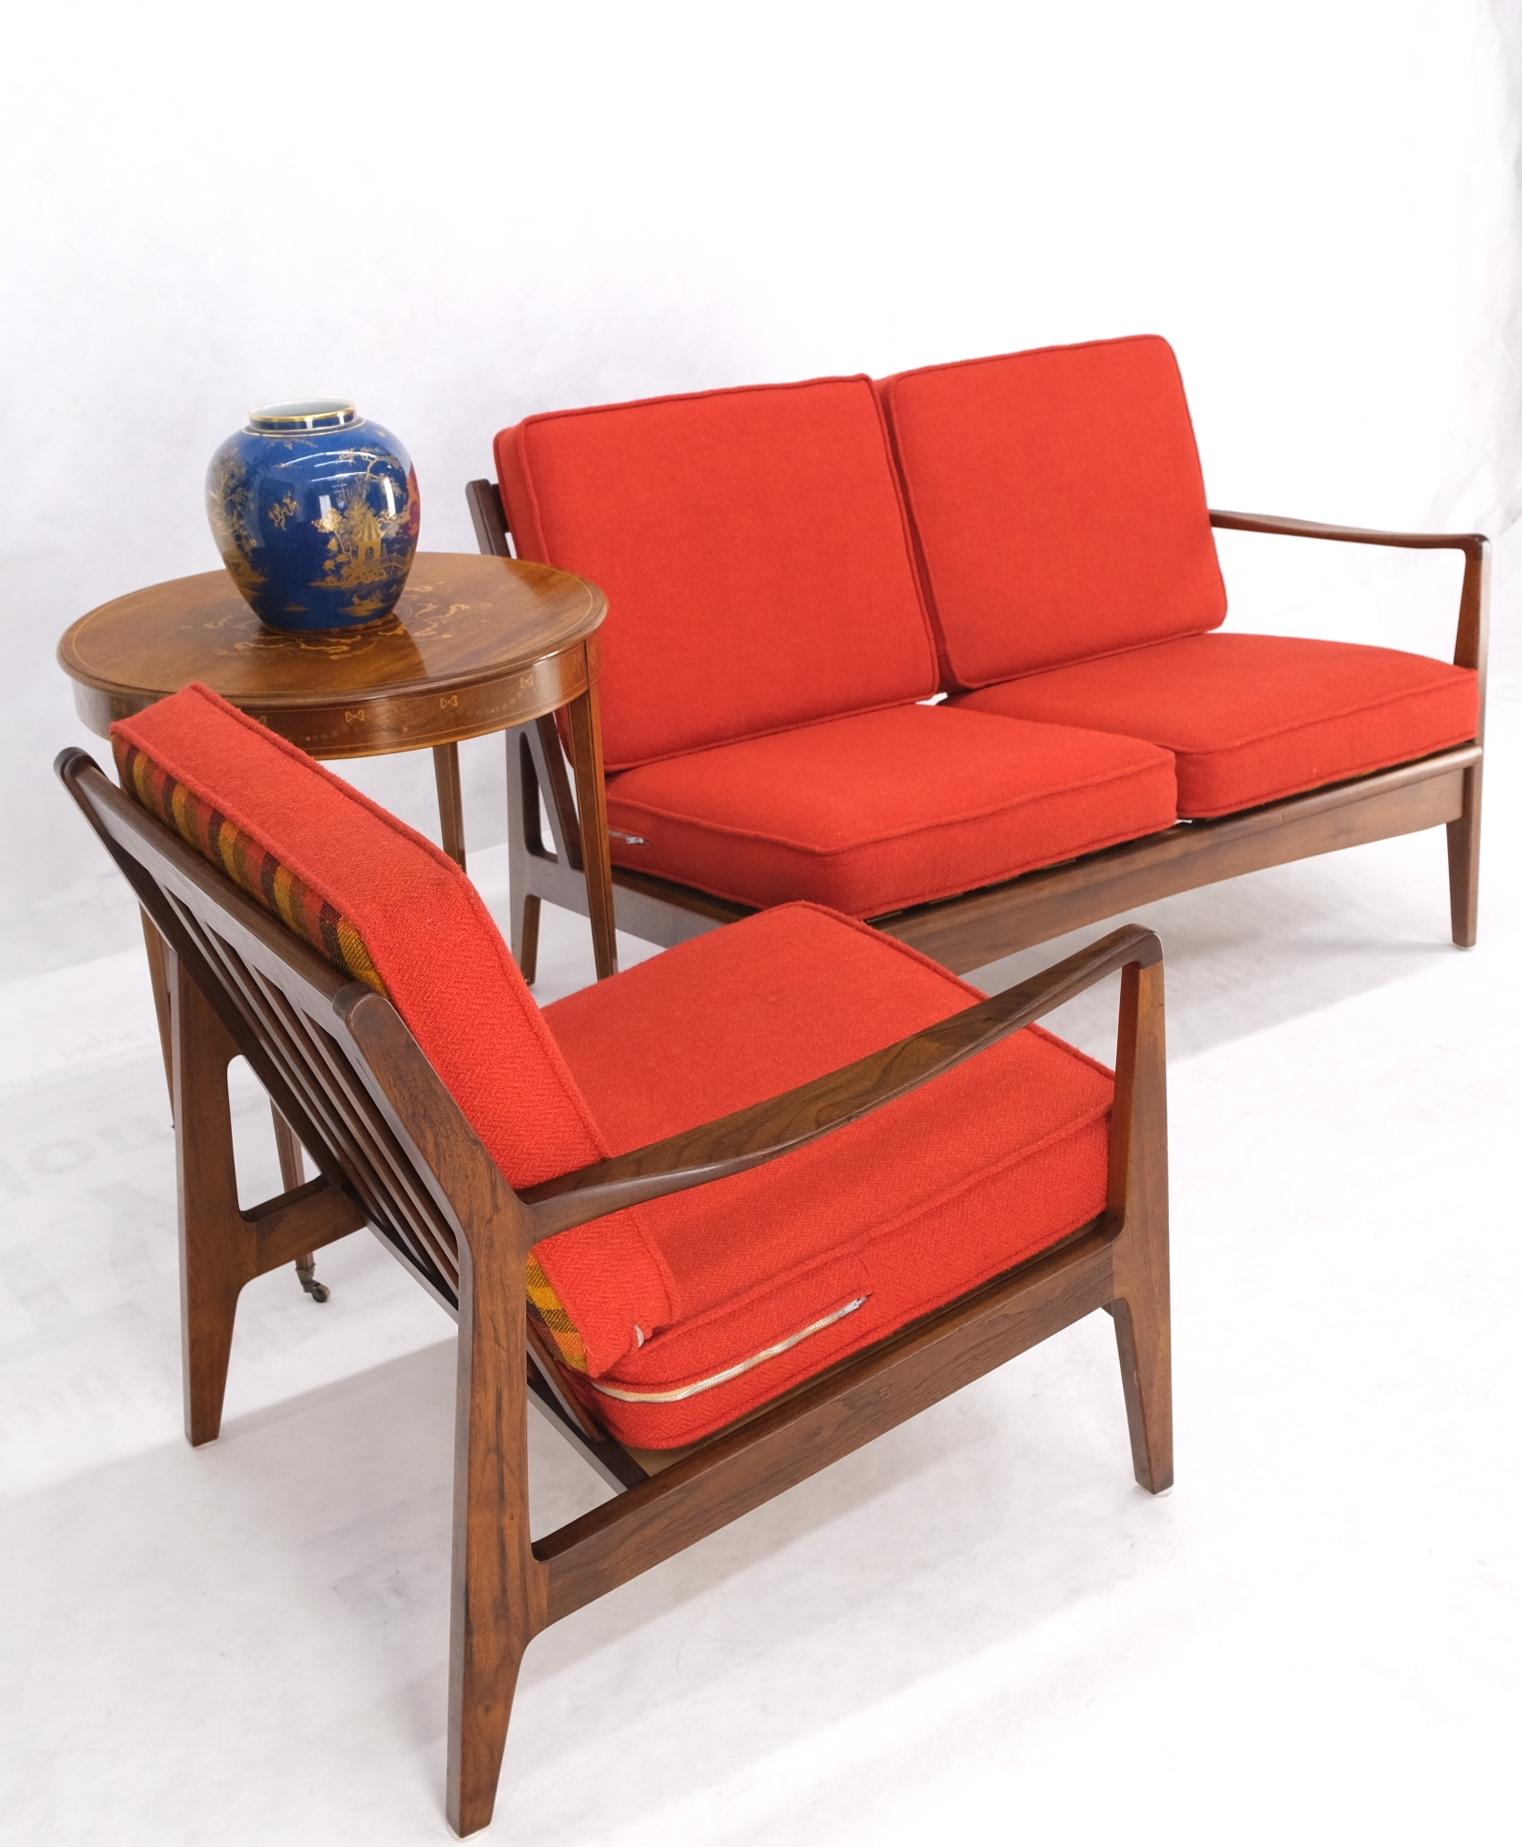 Ensemble de fauteuils de salon danois en noyer, de style moderne du milieu du siècle, avec causeuse et canapé. Les dimensions de la liste reflètent la longueur combinée.

Le siège long mesure 29'' x 46'' × 28'' Hauteur du siège : 16''
Le siège